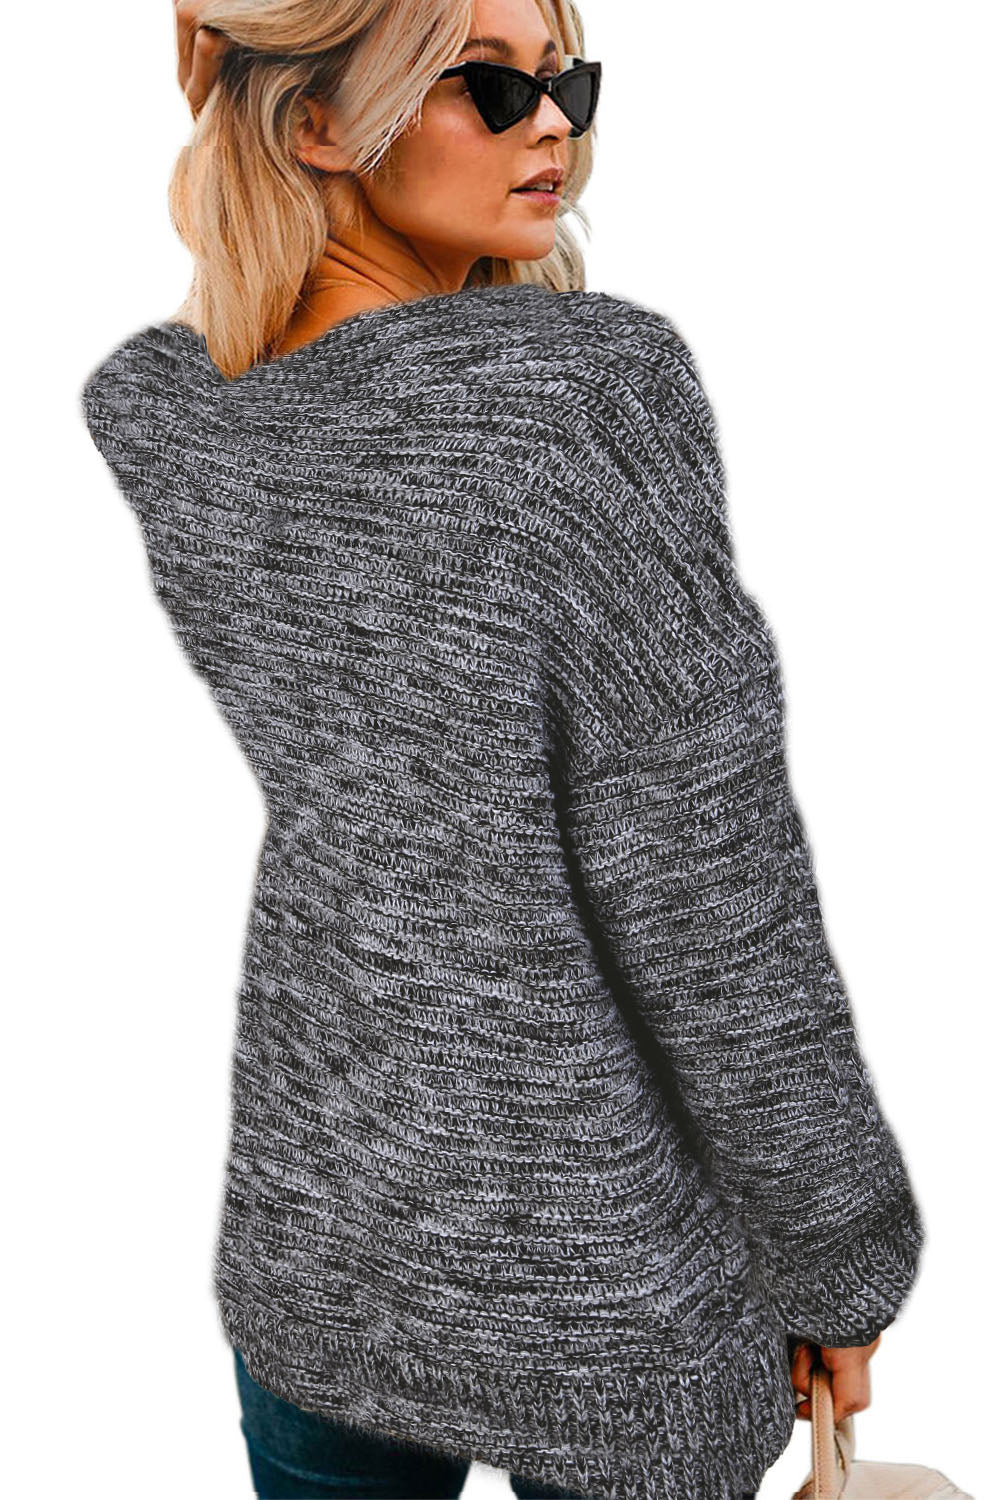 Cardigan en tricot gris foncé à manches longues et larges